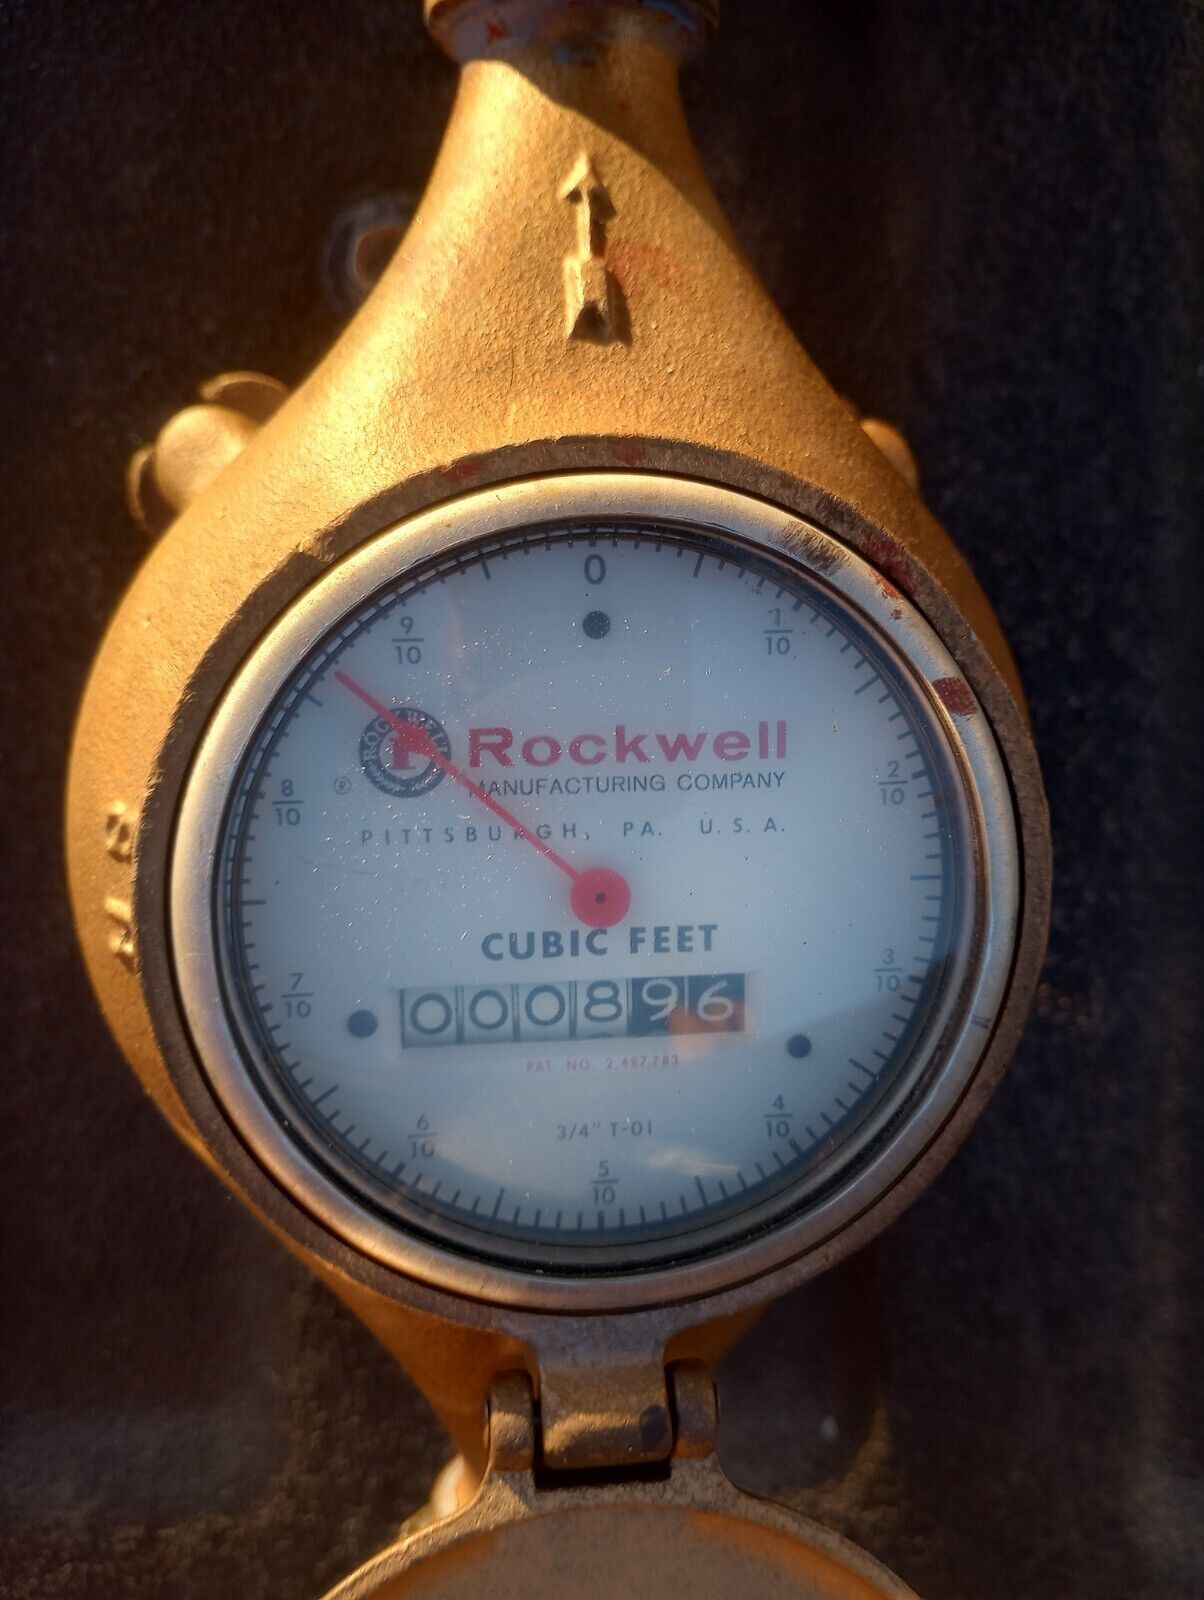  Rockwell Mfg Co Brass Water Meter 3/4 In Gauge Model T-01